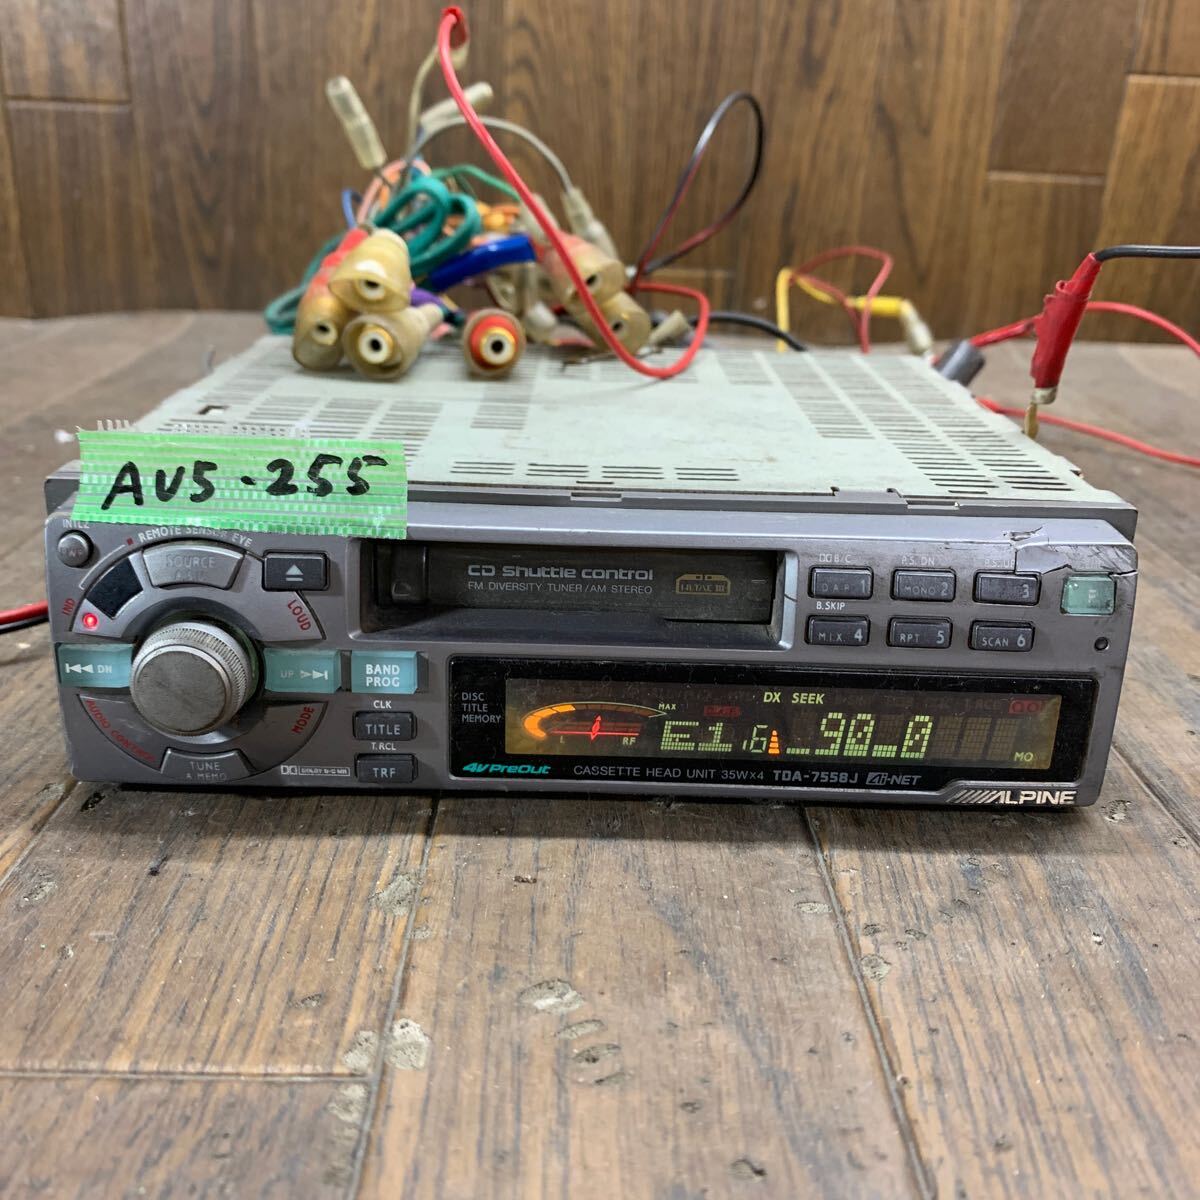 AV5-255 激安 カーステレオ ALPINE アルパイン TDA-7558J R60510193 カセット FM/AM テープデッキ 本体のみ 簡易動作確認済み 中古現状品_全体酷い錆び汚れあり